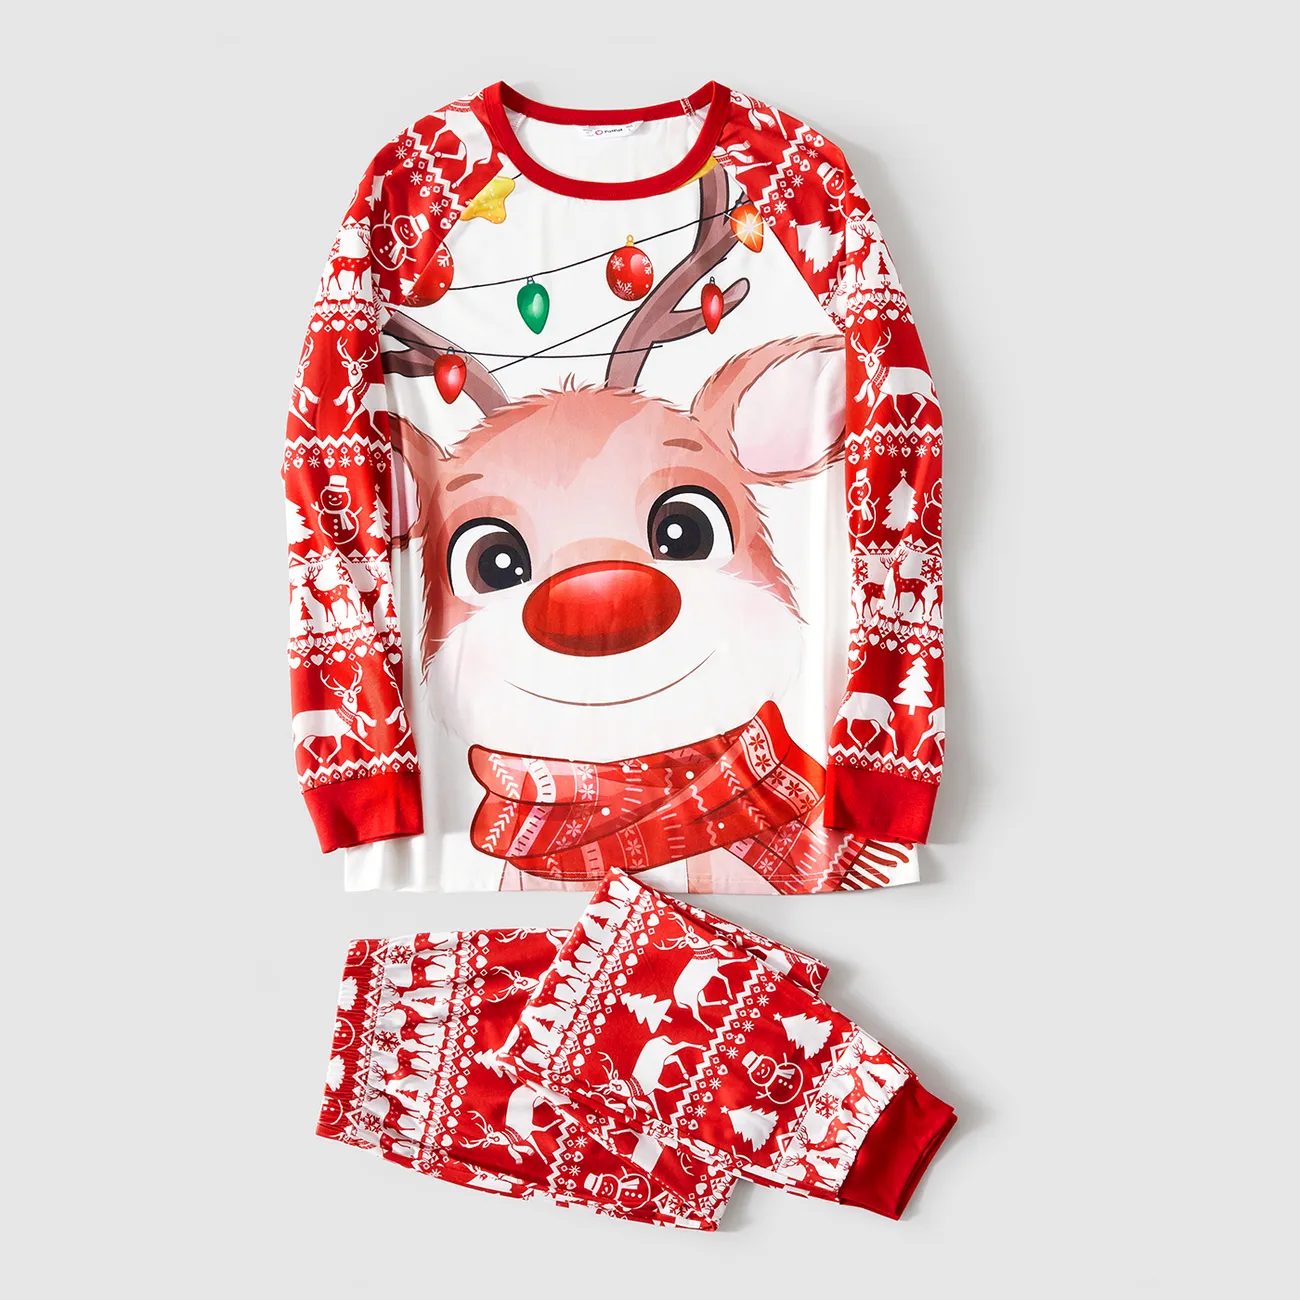 Natal Look de família Manga comprida Conjuntos de roupa para a família Pijamas (Flame Resistant) vermelho branco big image 1